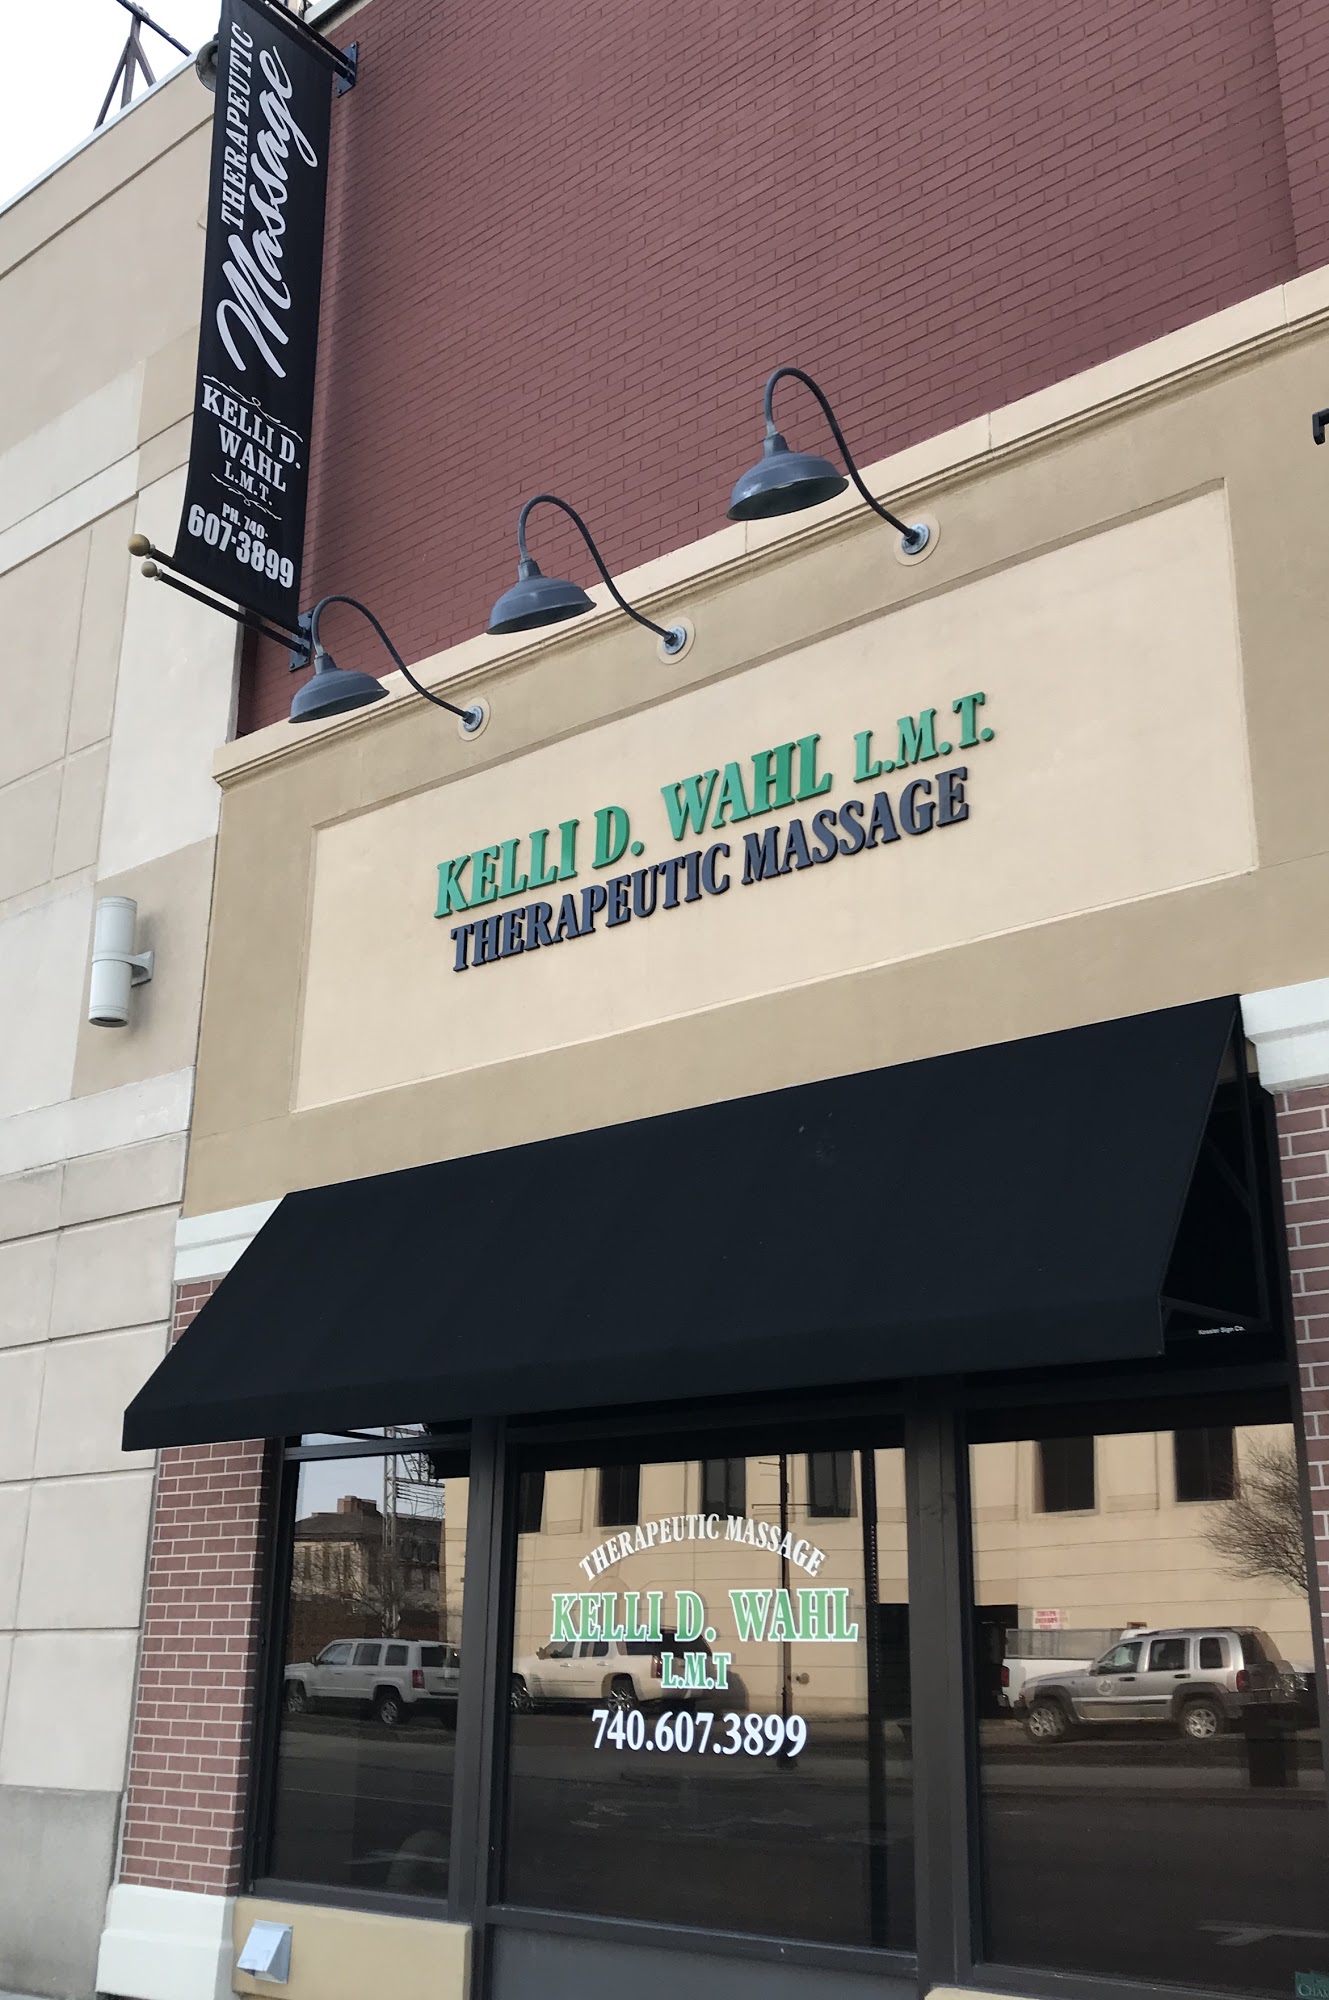 Kelli D. Wahl Lmt Therapeutic Massage